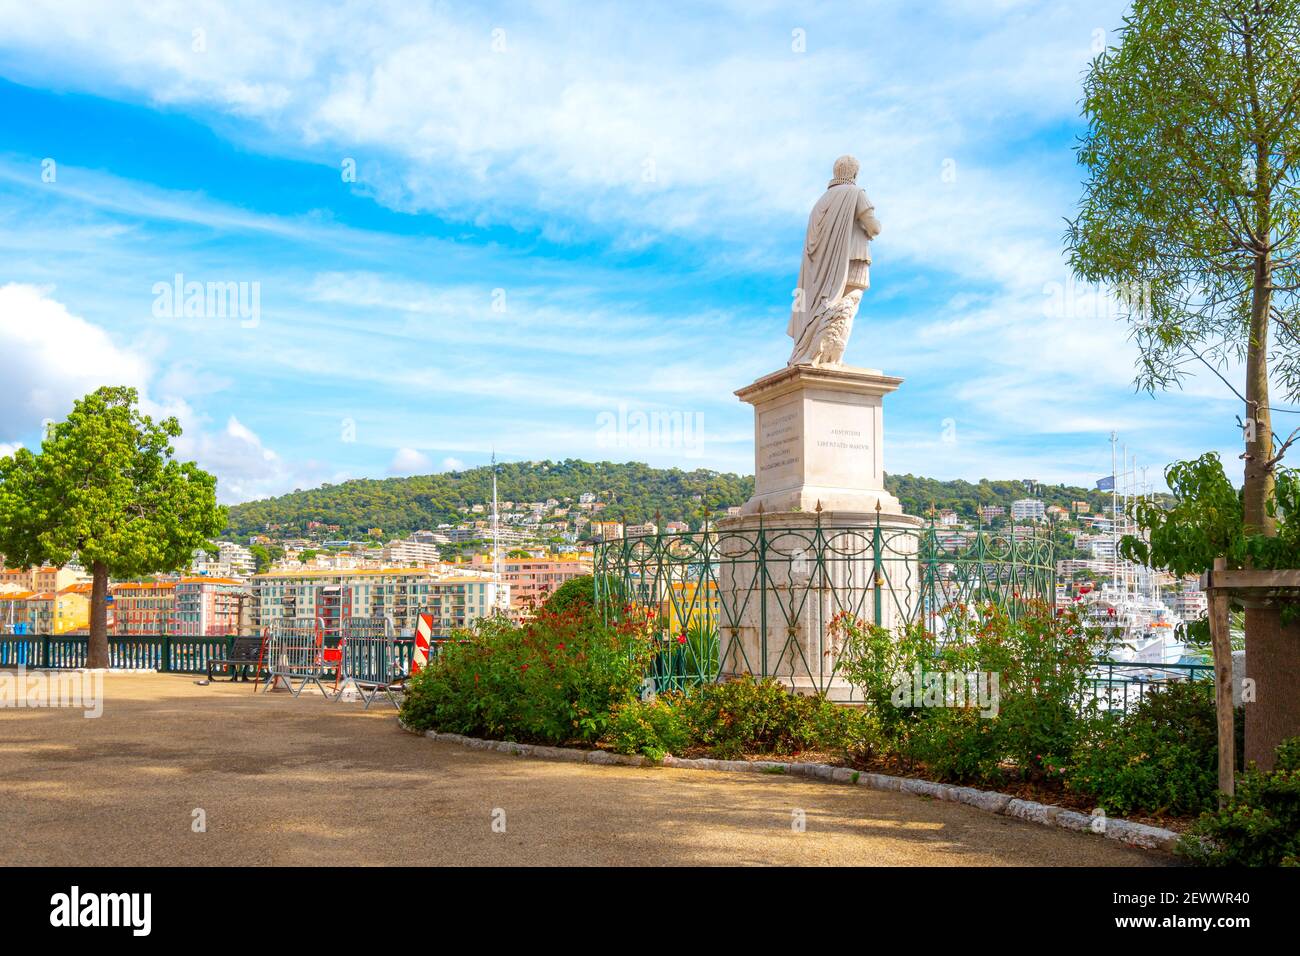 Une statue maritime donne sur la Lympia du Vieux-Port, dans la ville balnéaire de Nice, en France, sur la Côte d'Azur. Banque D'Images